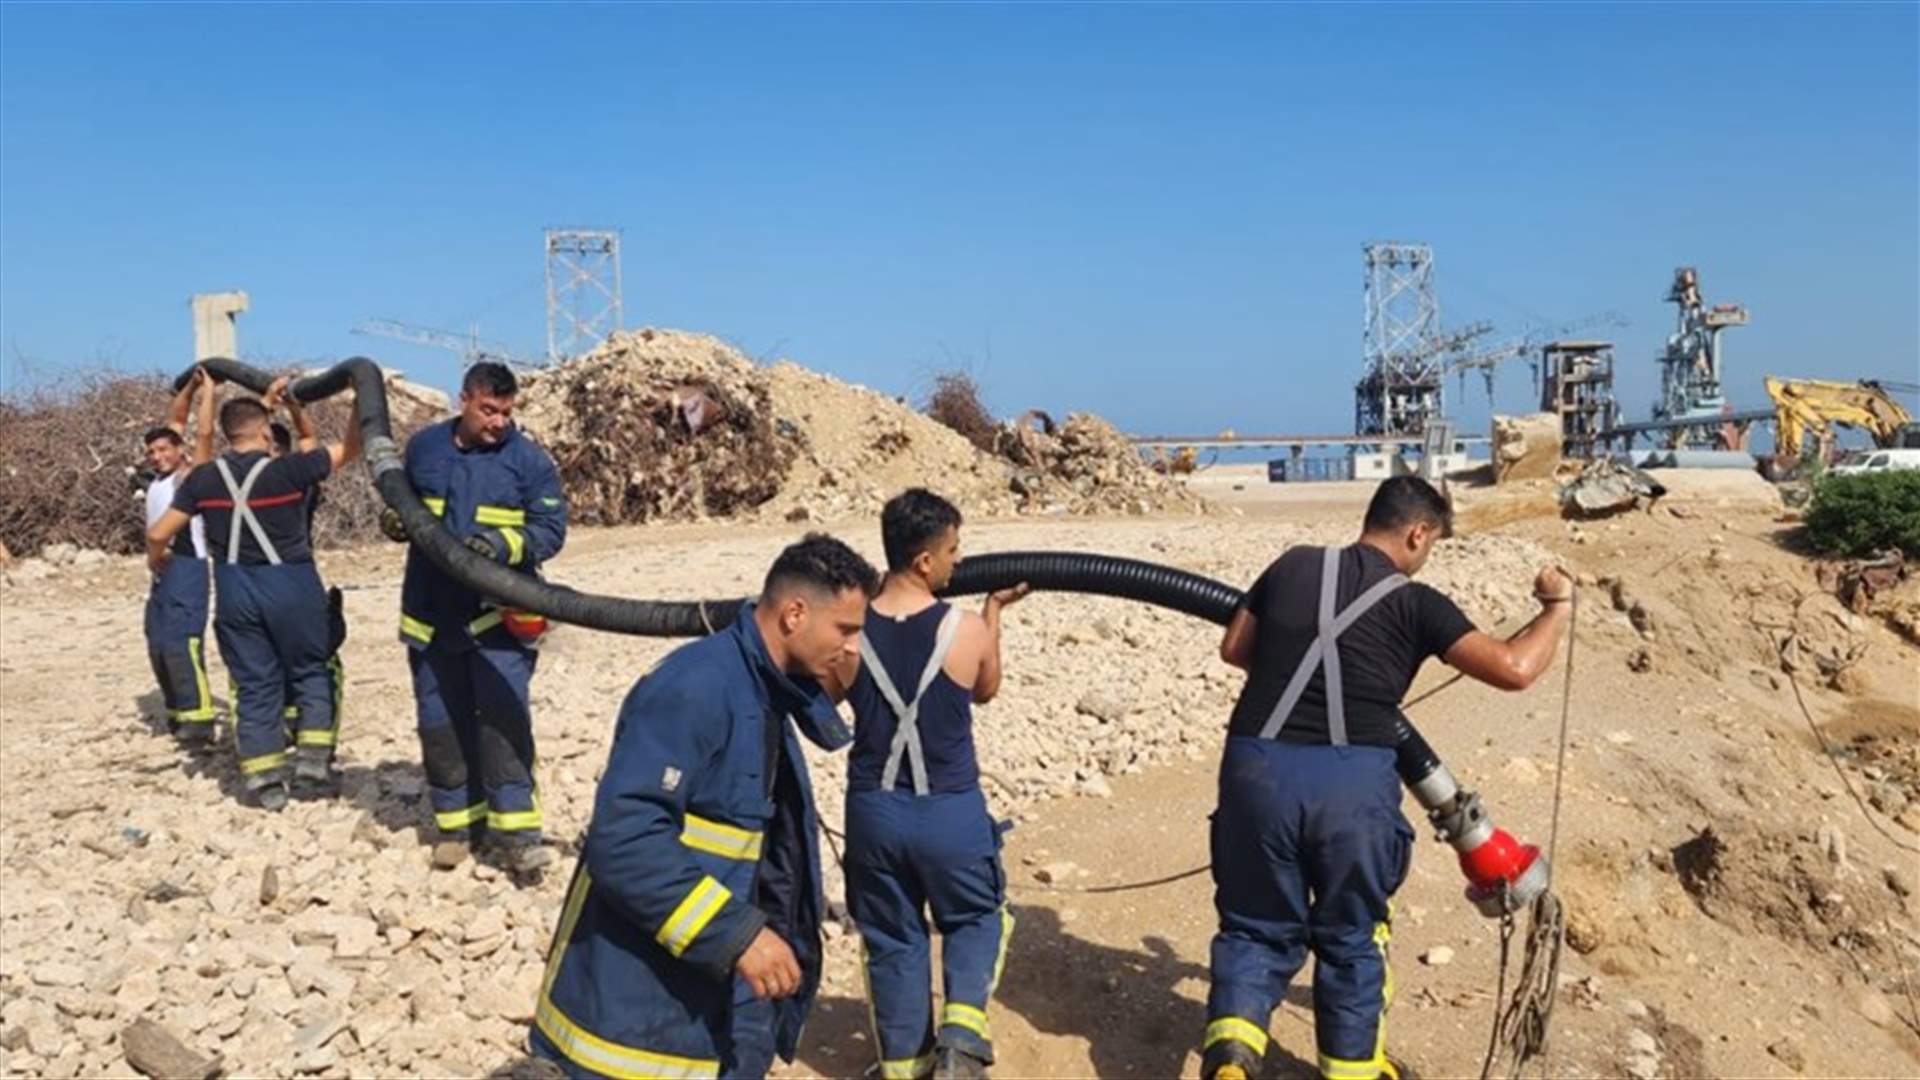 فوج إطفاء بيروت: إستكمال عمليات تبريد بقايا الحبوب في إهراءات مرفأ بيروت